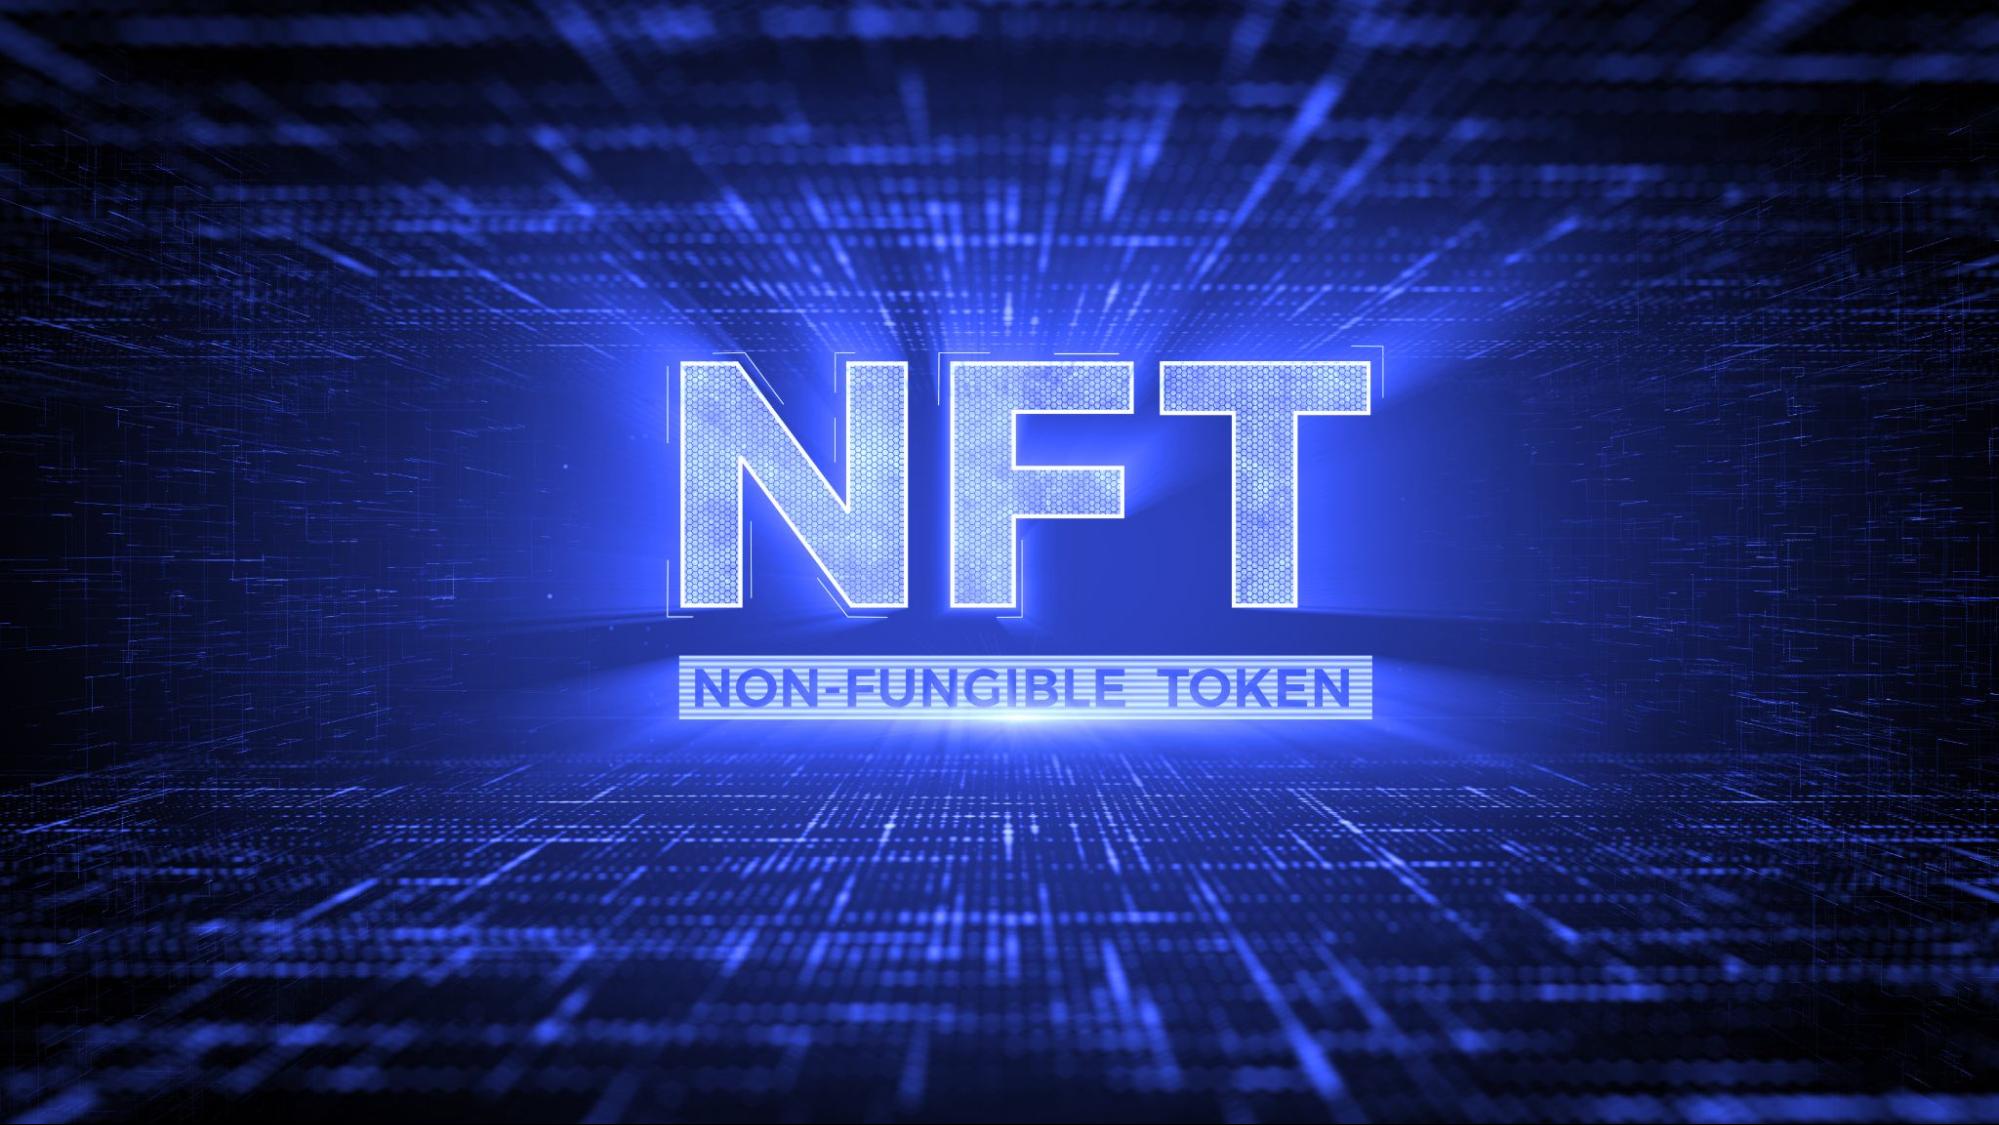 NFT en logística: ¿cómo sería su aplicación?